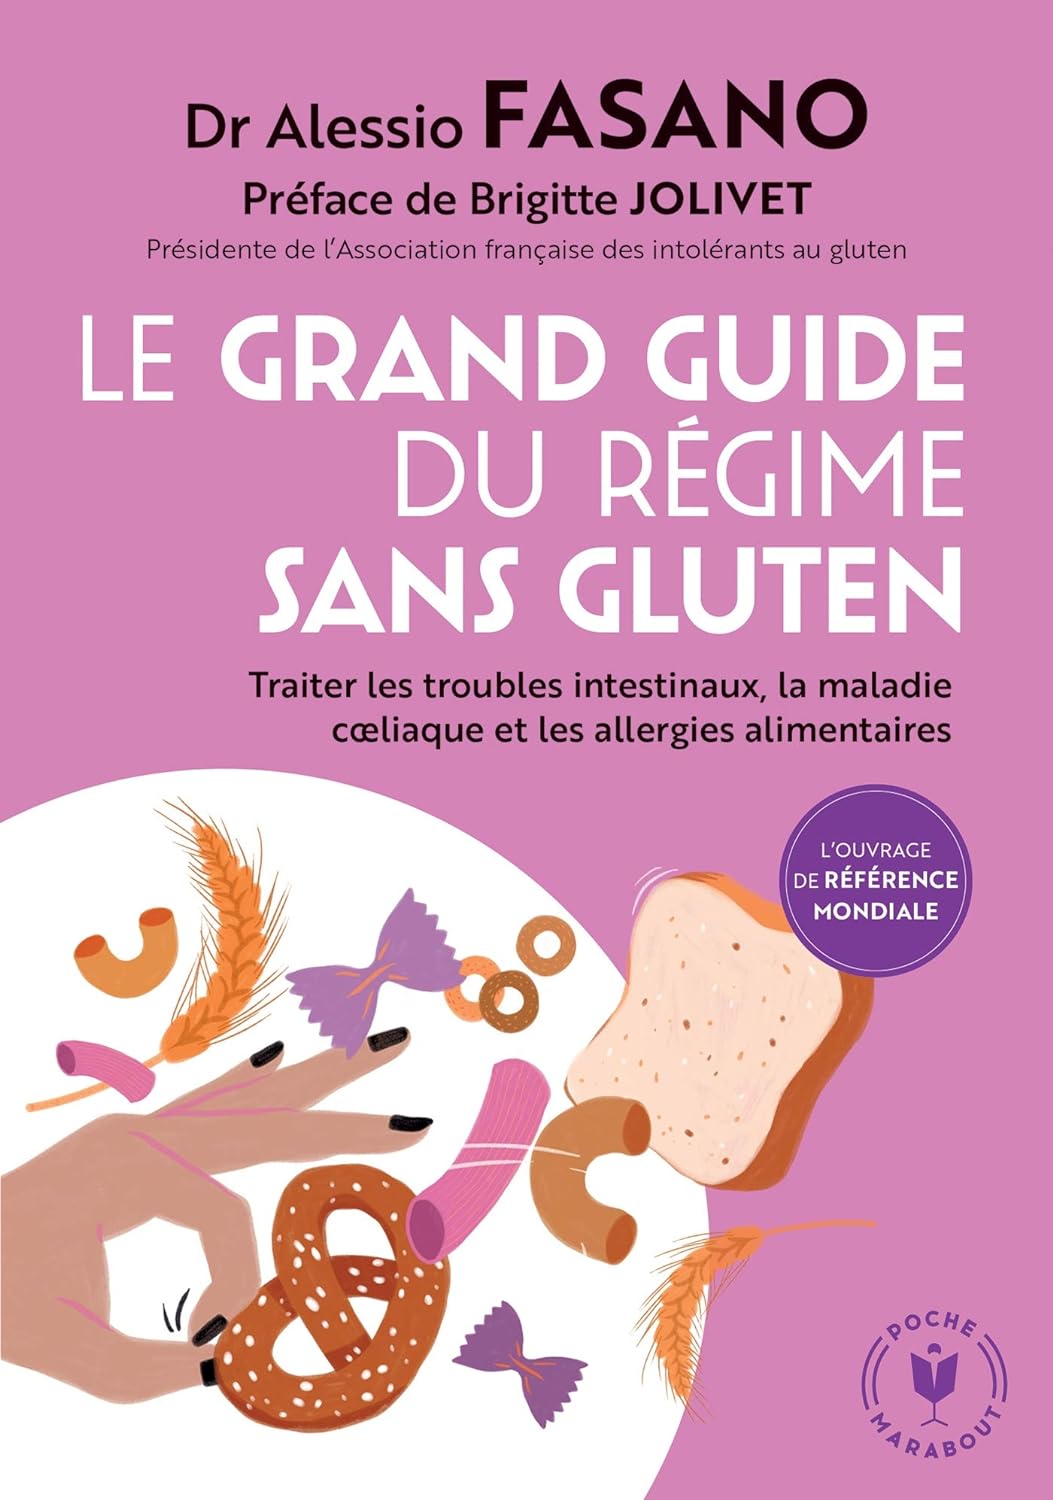 Livre ISBN 2501150880 Le grand guide du régime sans gluten: Traiter les troubles intestinaux, la maladie coeliaque et les allergies alimentaires (Dr Alessio Fasano)